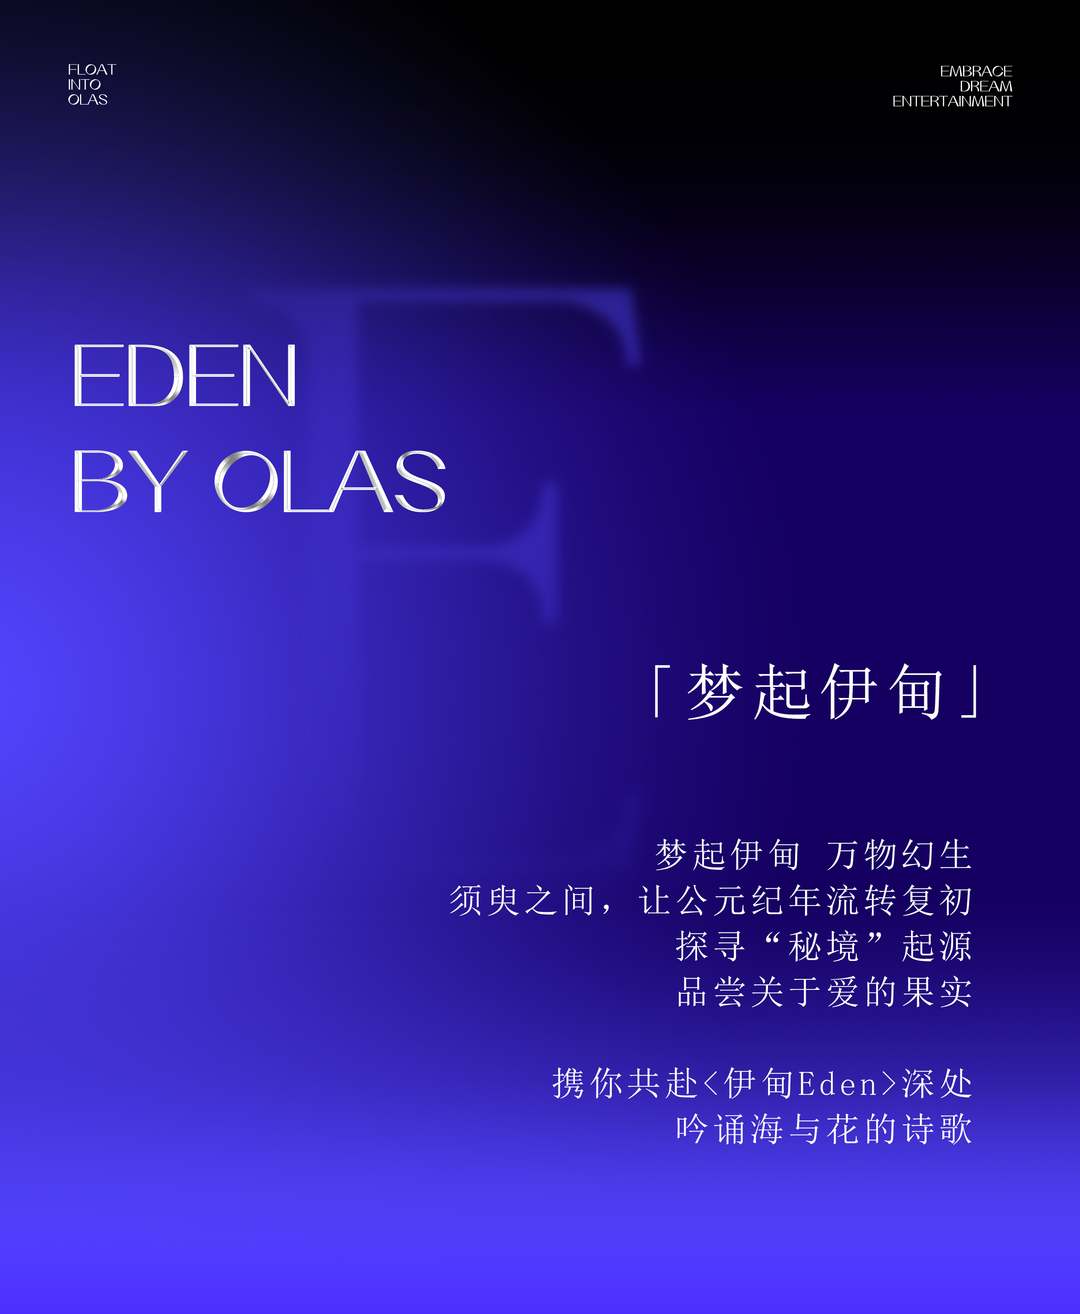 旅程新啟 聲振寰宇 | EDEN by OLAS-珠海OLAS酒吧/欧蕾司酒吧